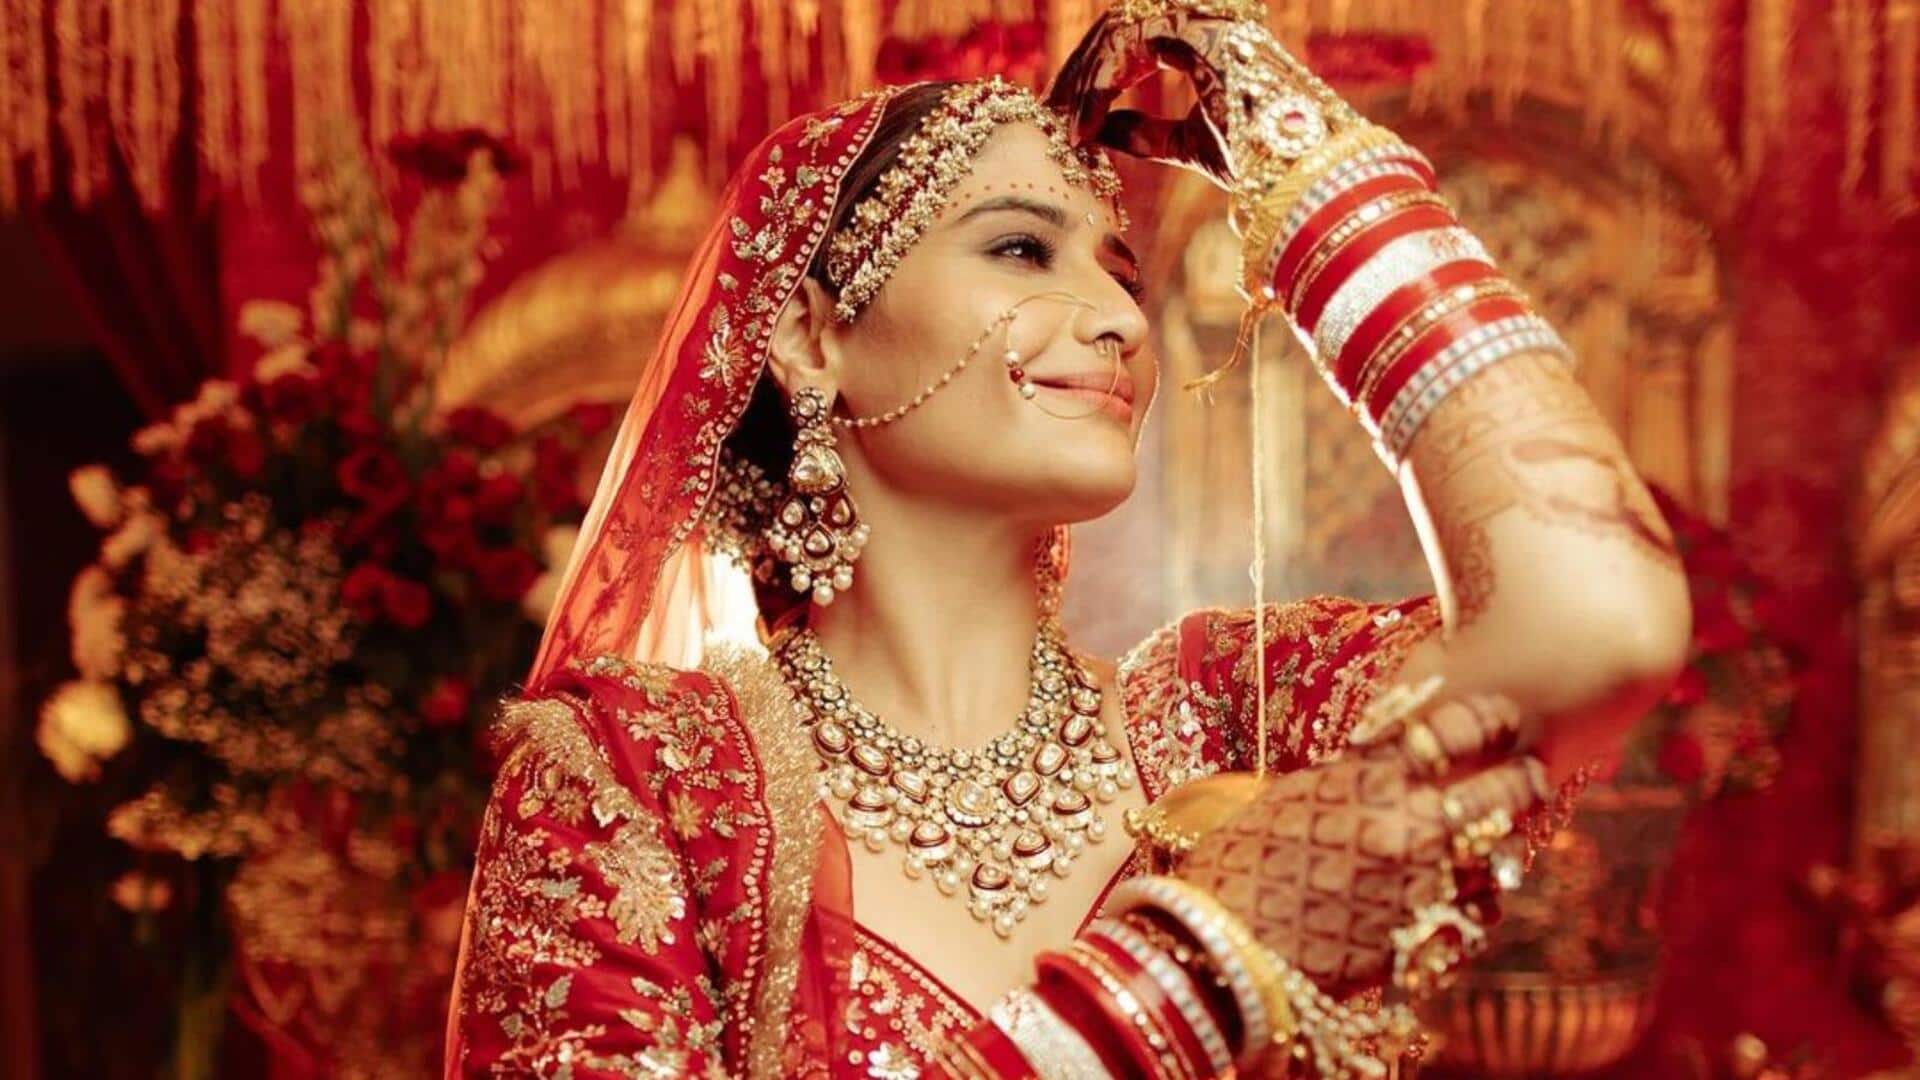 आरती सिंह की शादी की तस्वीरें आईं सामने, लाल जोड़े में खूबसूरत दिखीं अभिनेत्री 